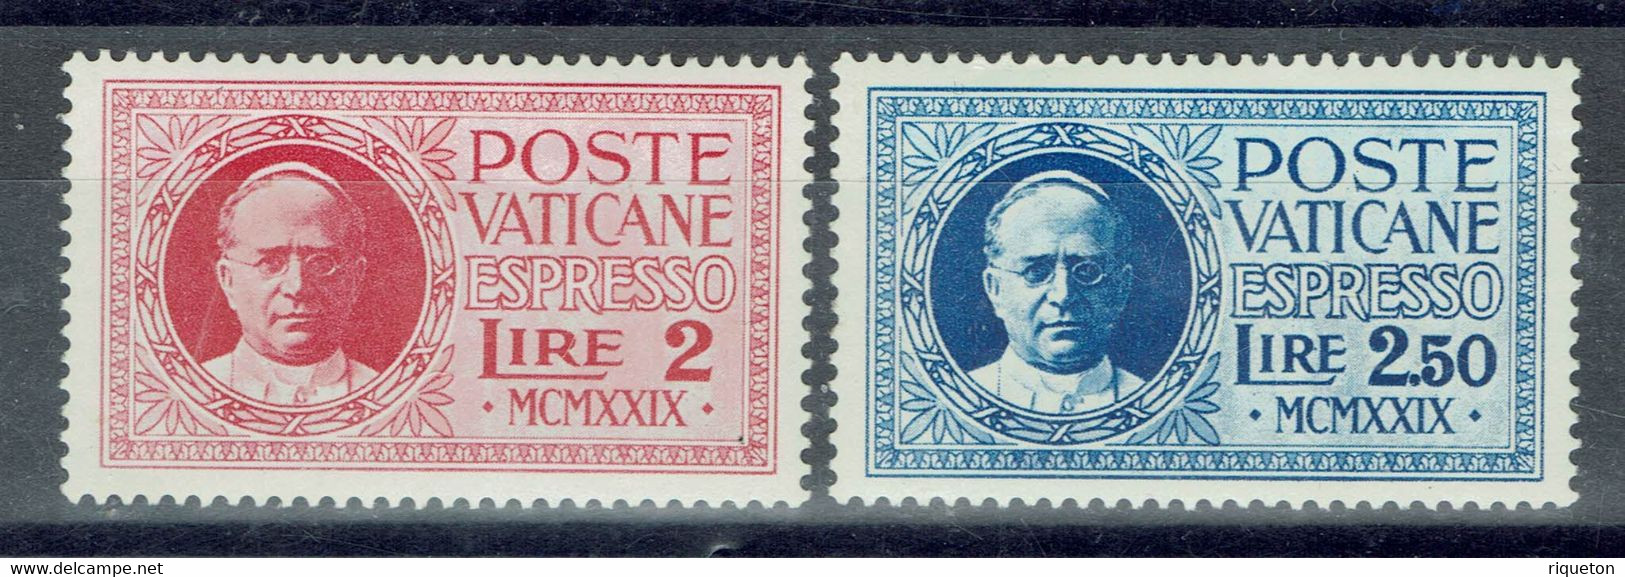 Vatican - 1929 - Timbres Pour Lettres Par Exprès - N° 1 & 2 - Neufs - XX - MNH - - Exprès